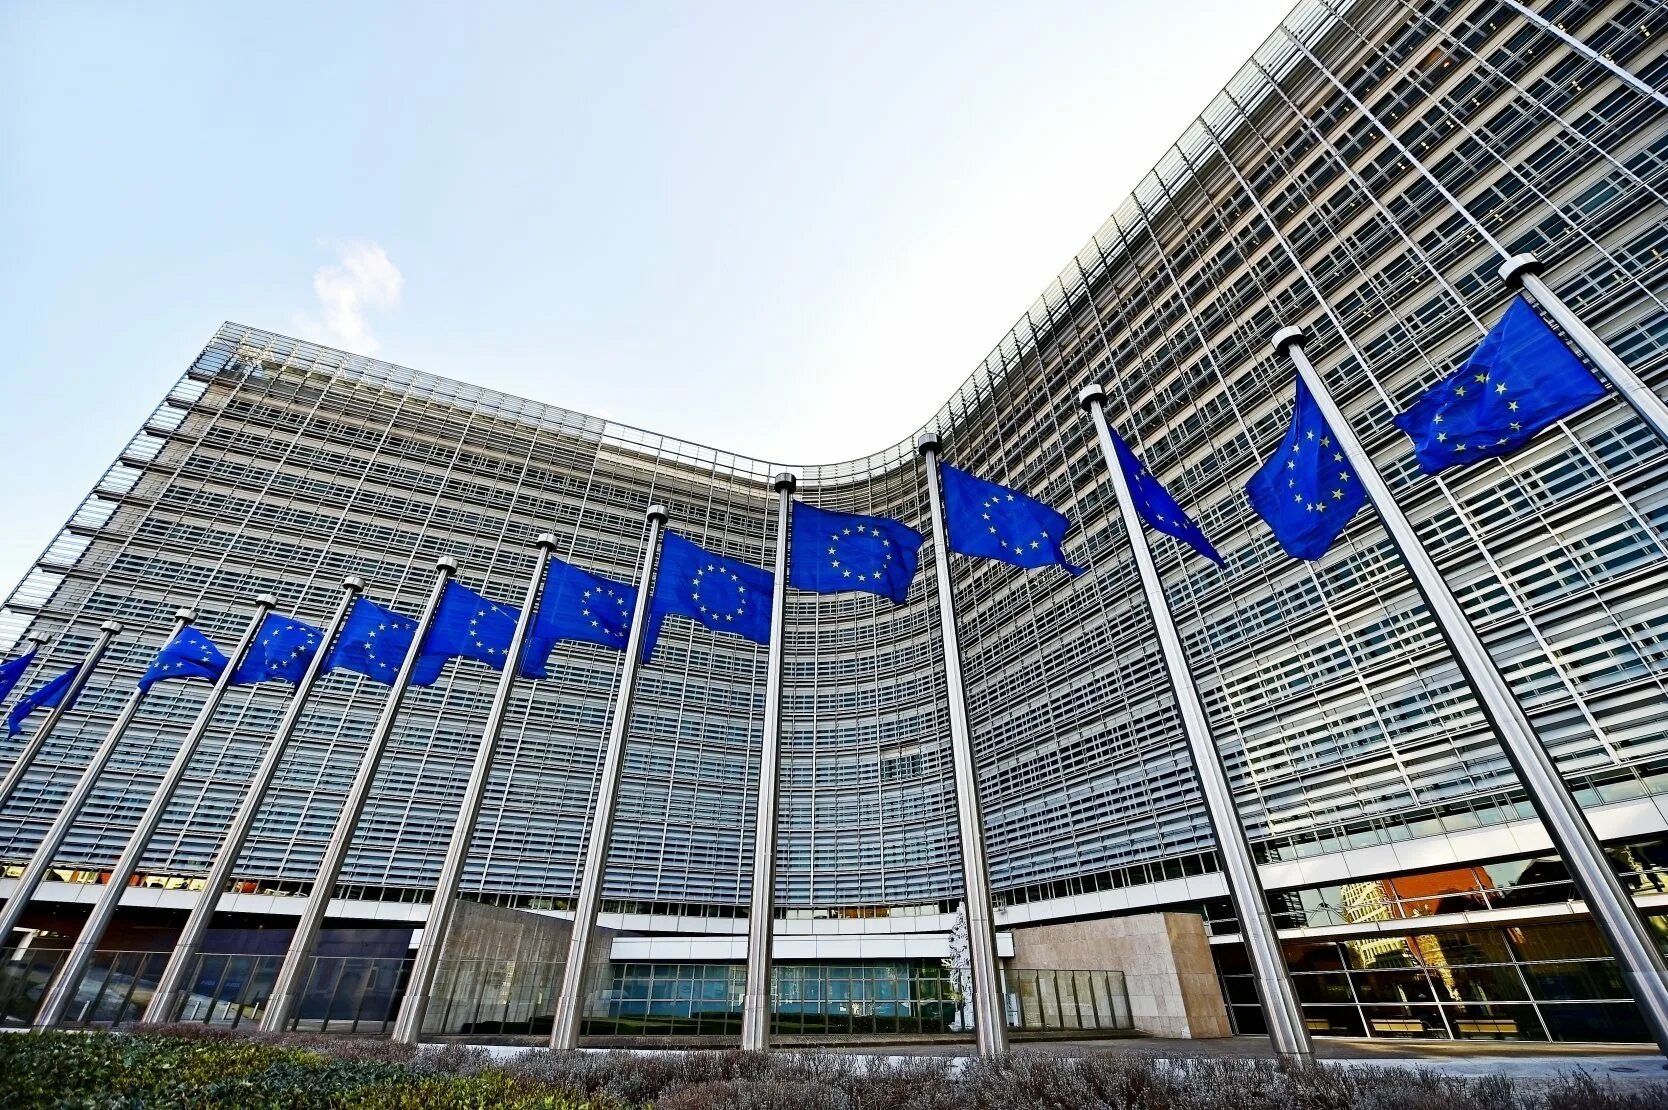 Совет европы оон. Европейская комиссия Брюссель. Здание Евросоюза в Брюсселе. Штаб квартира ООН В Брюсселе. Здание Евросовета Брюссель.